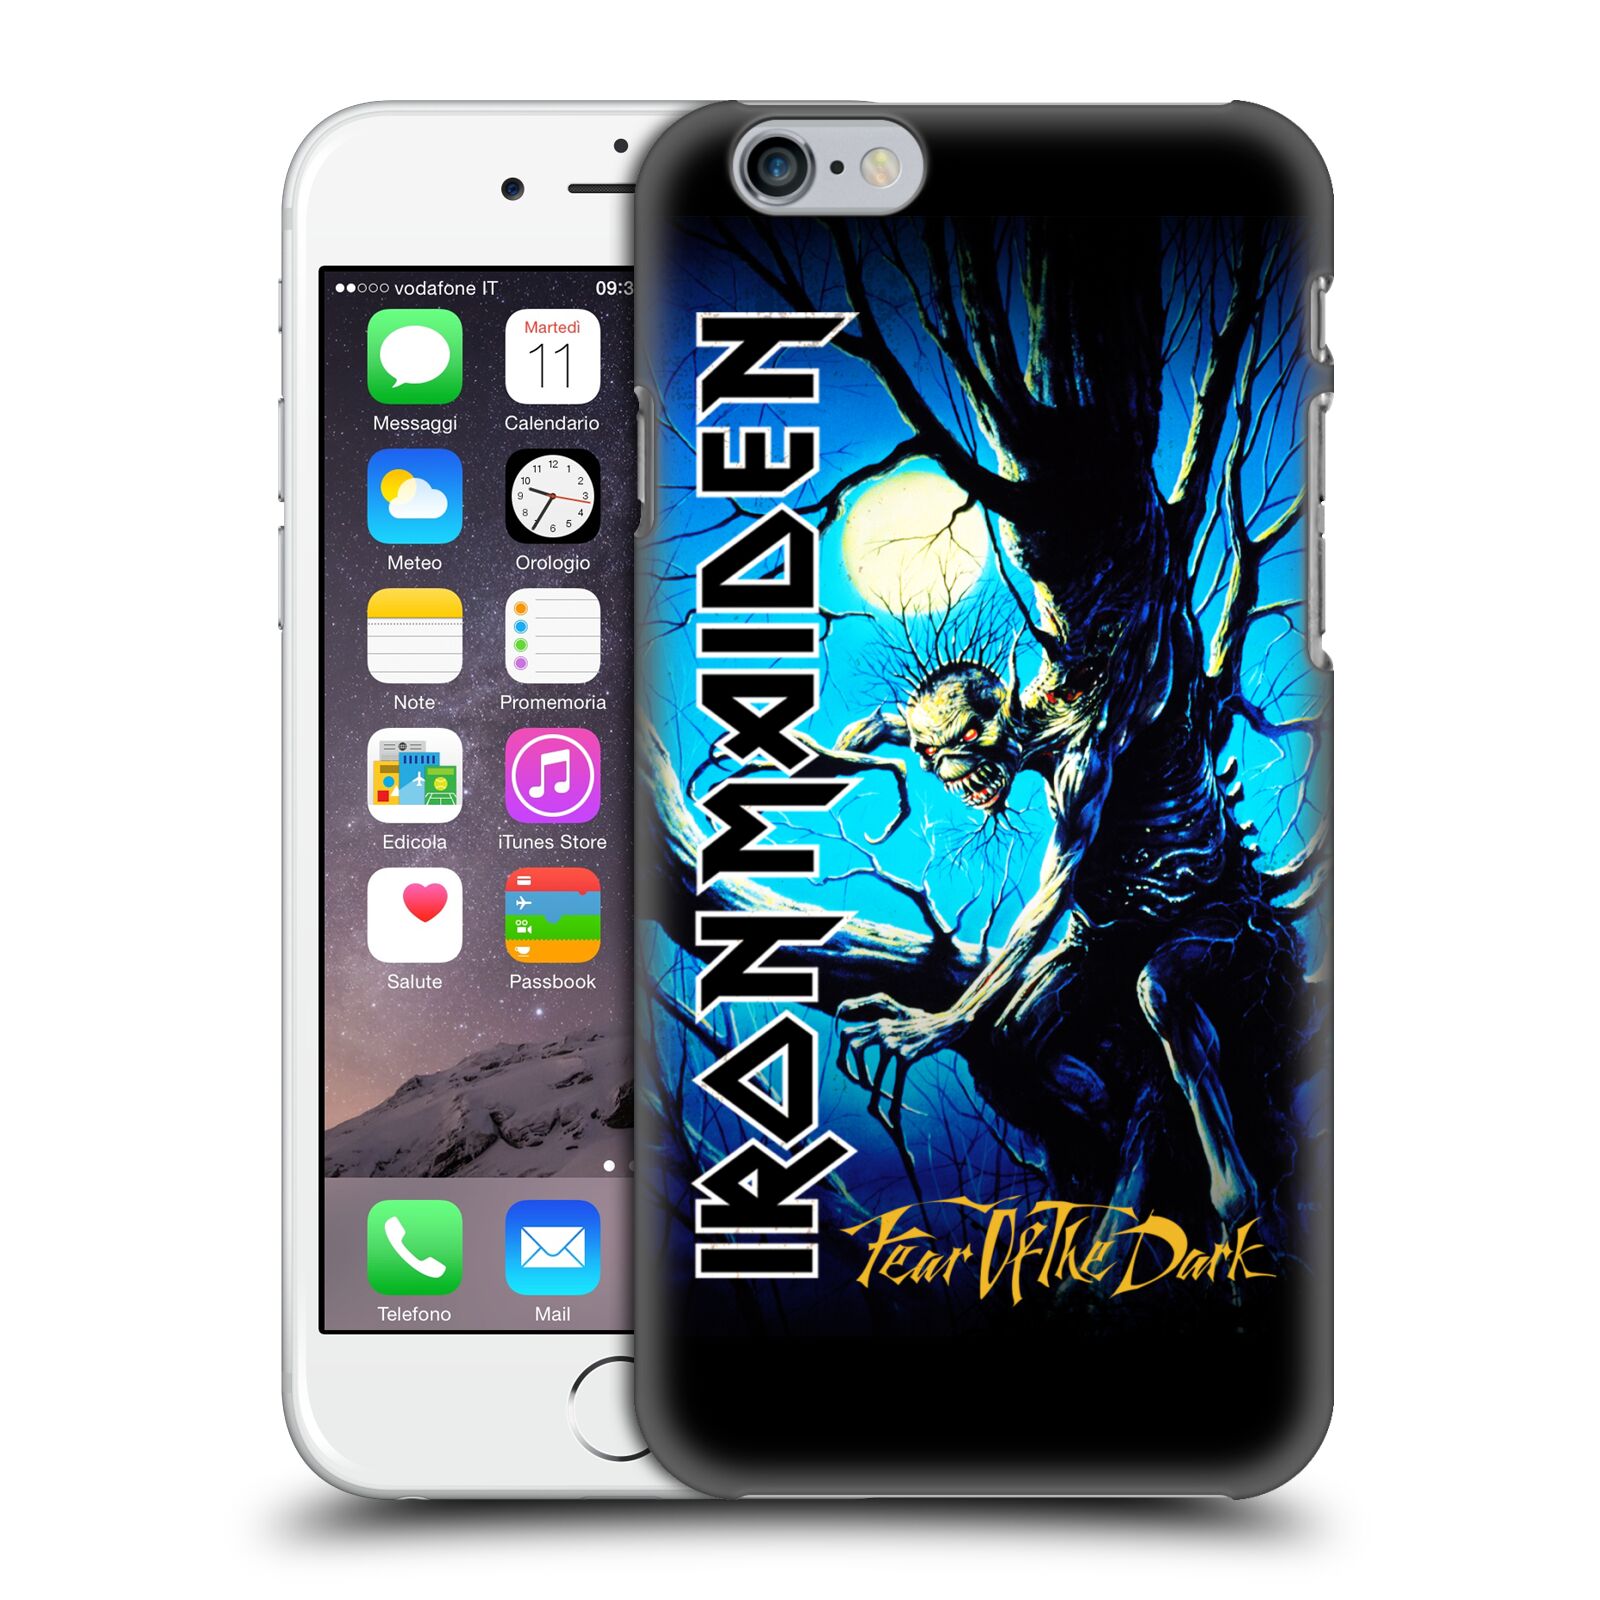 Plastové pouzdro na mobil Apple iPhone 6 HEAD CASE - Iron Maiden - Fear Of The Dark (Plastový kryt či obal na mobilní telefon s licencovaným motivem Iron Maiden Apple iPhone 6)